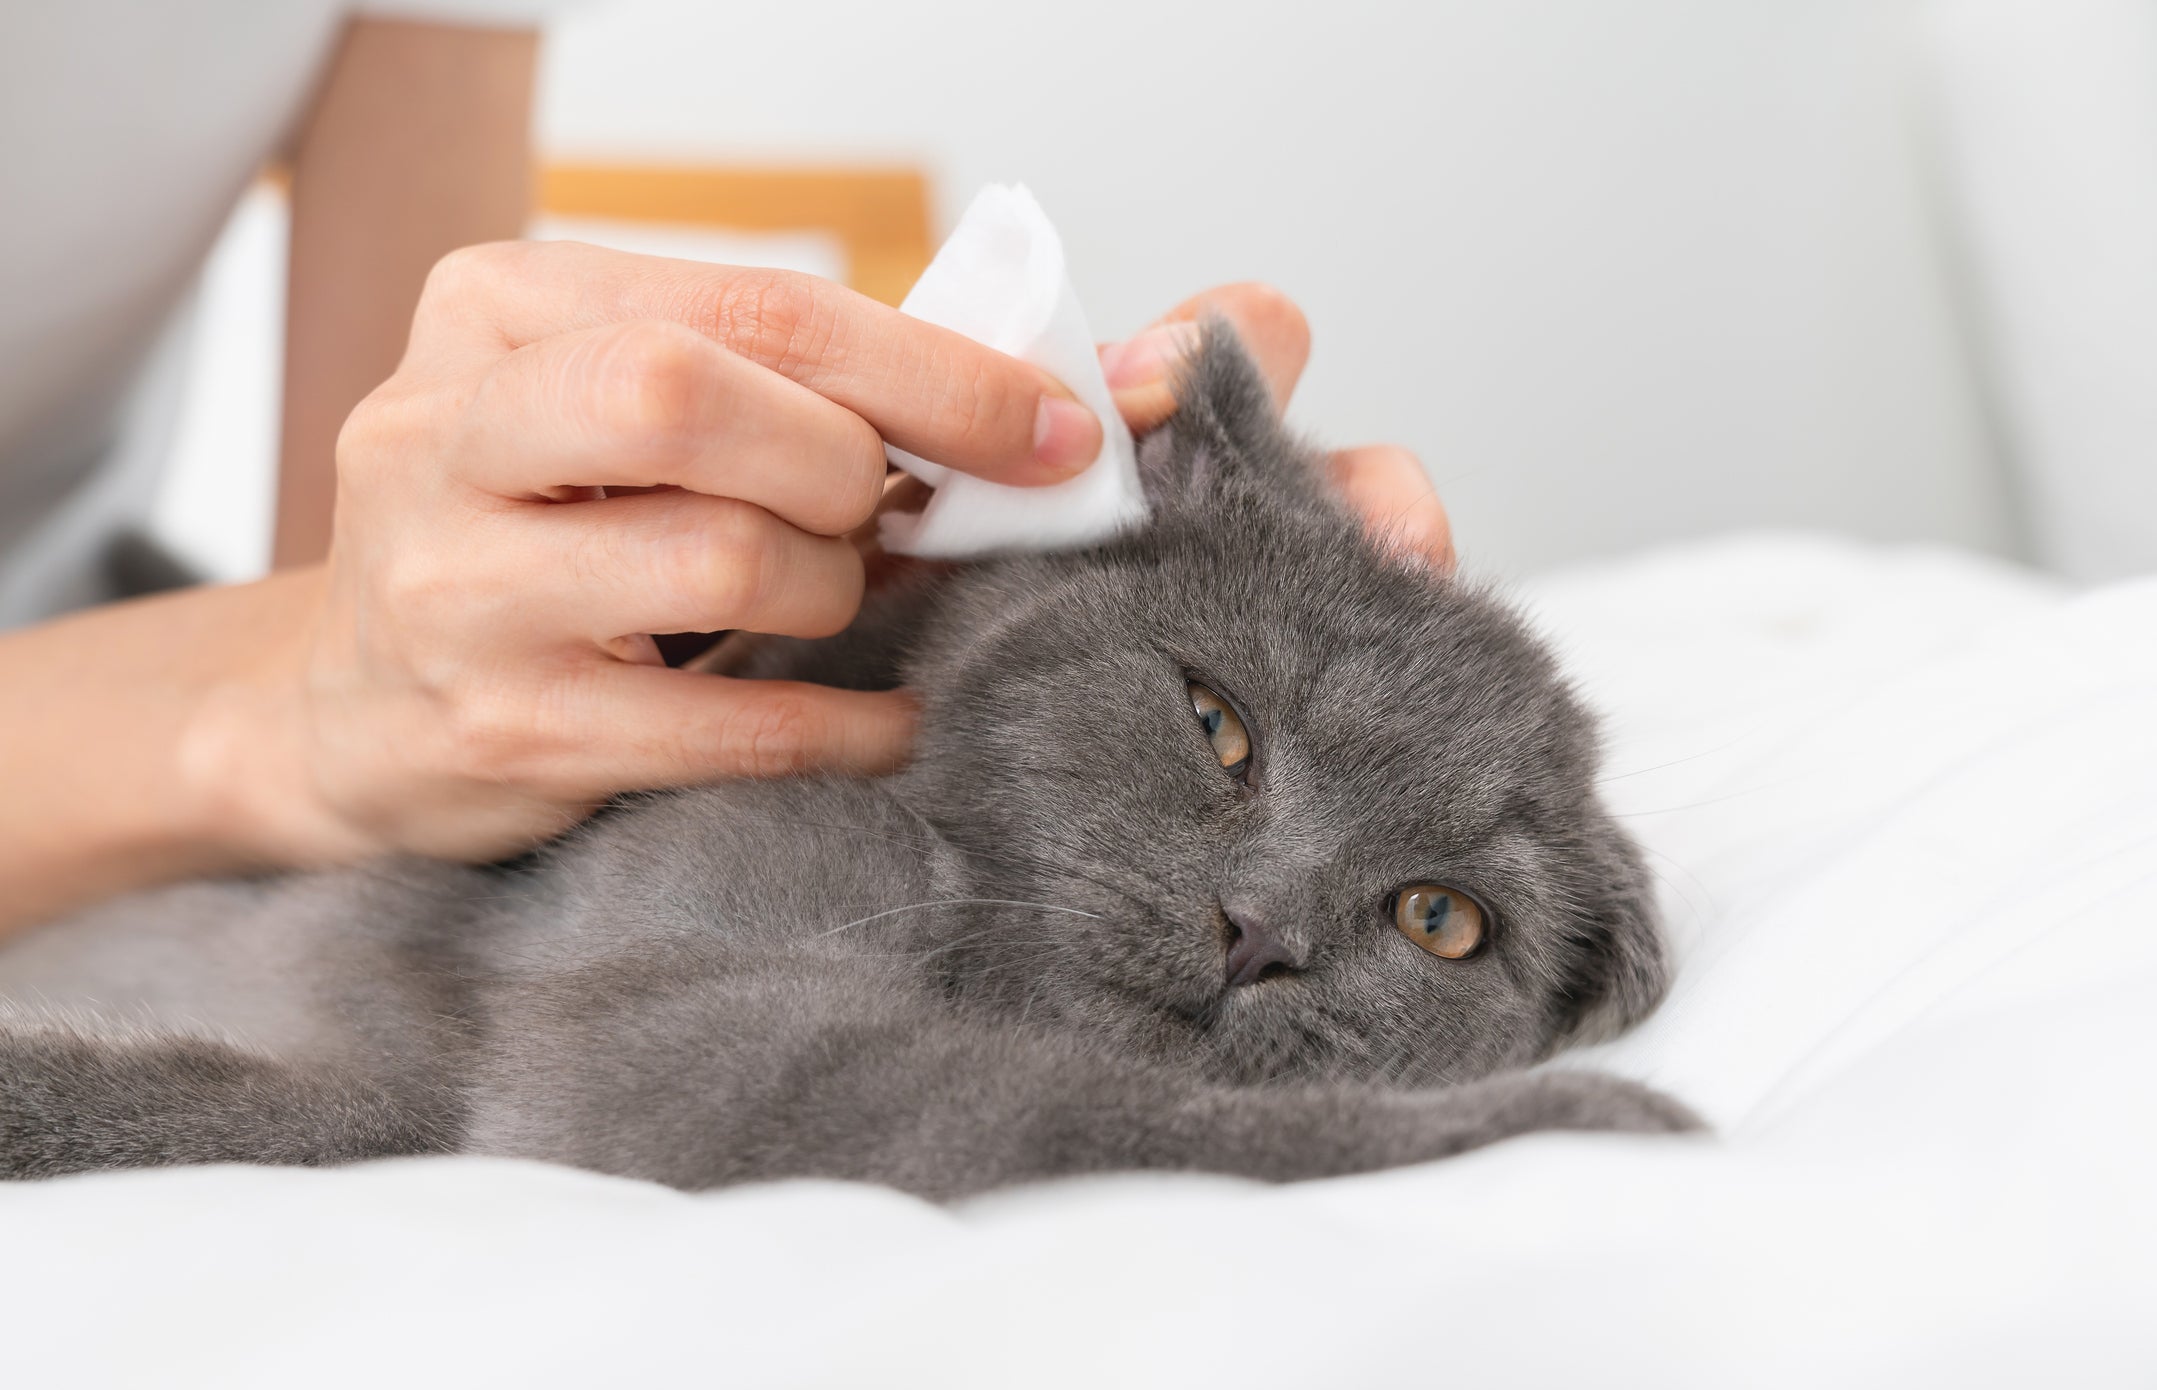 Tutora limpando orelha de gato cinza com lenço branco